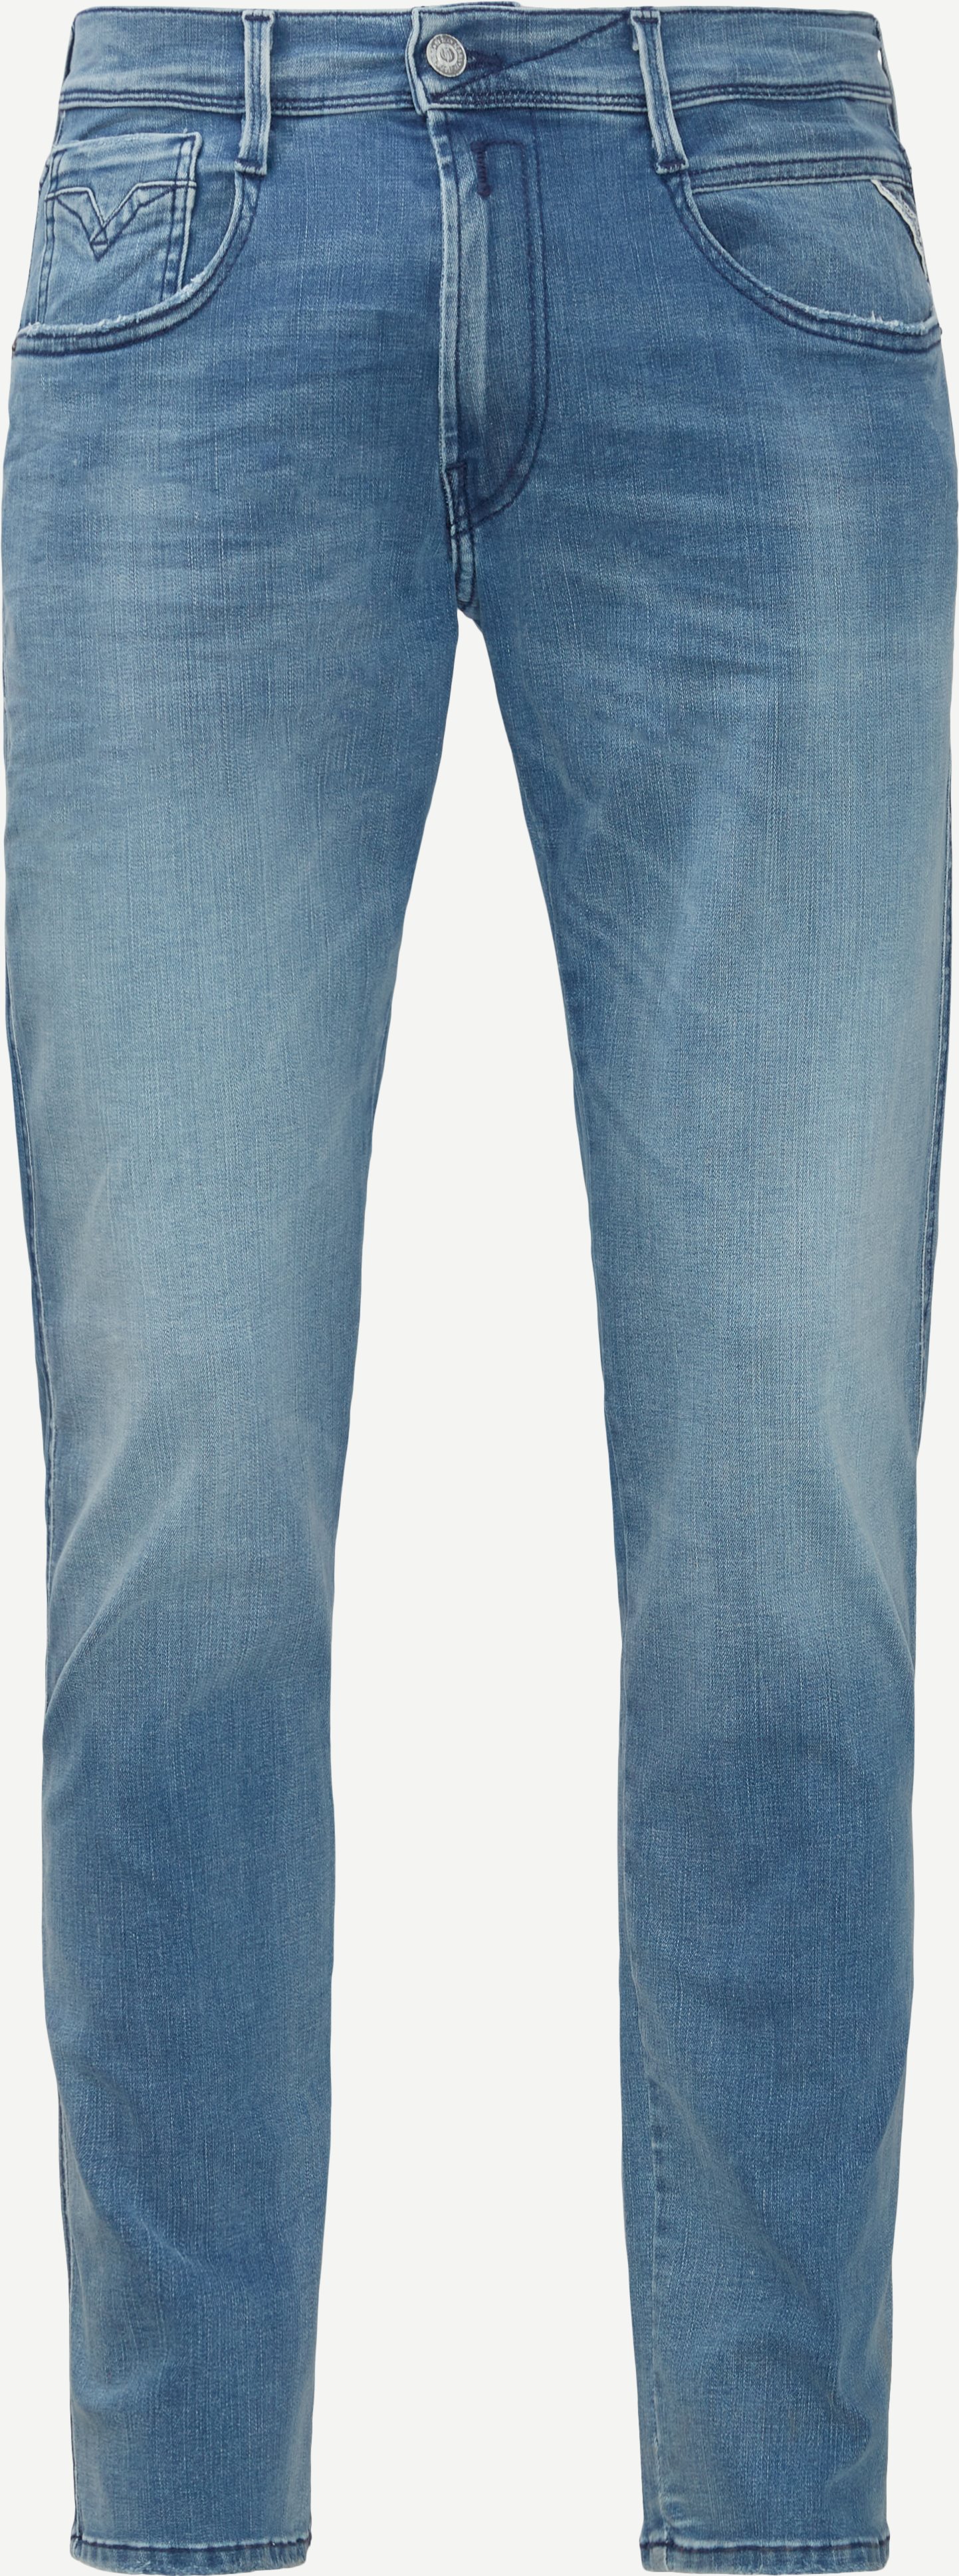 661 WI6 Anbass Hyperflex Jeans - Jeans - Slim fit - Denim